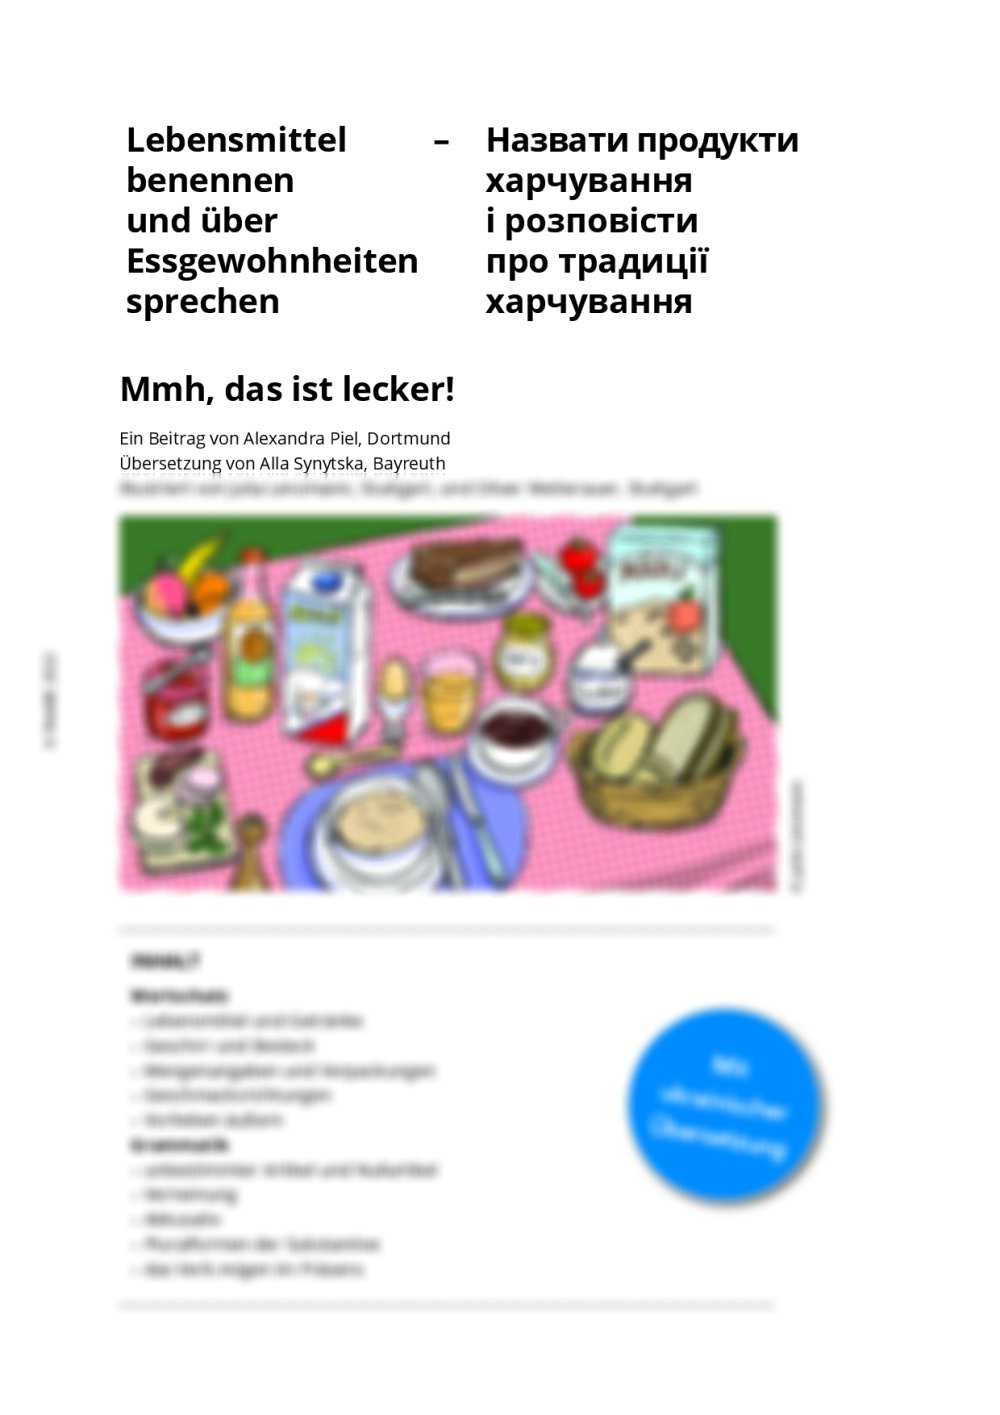 Lebensmittel und Essgewohnheiten (mit ukrainischer Übersetzung) - Seite 1